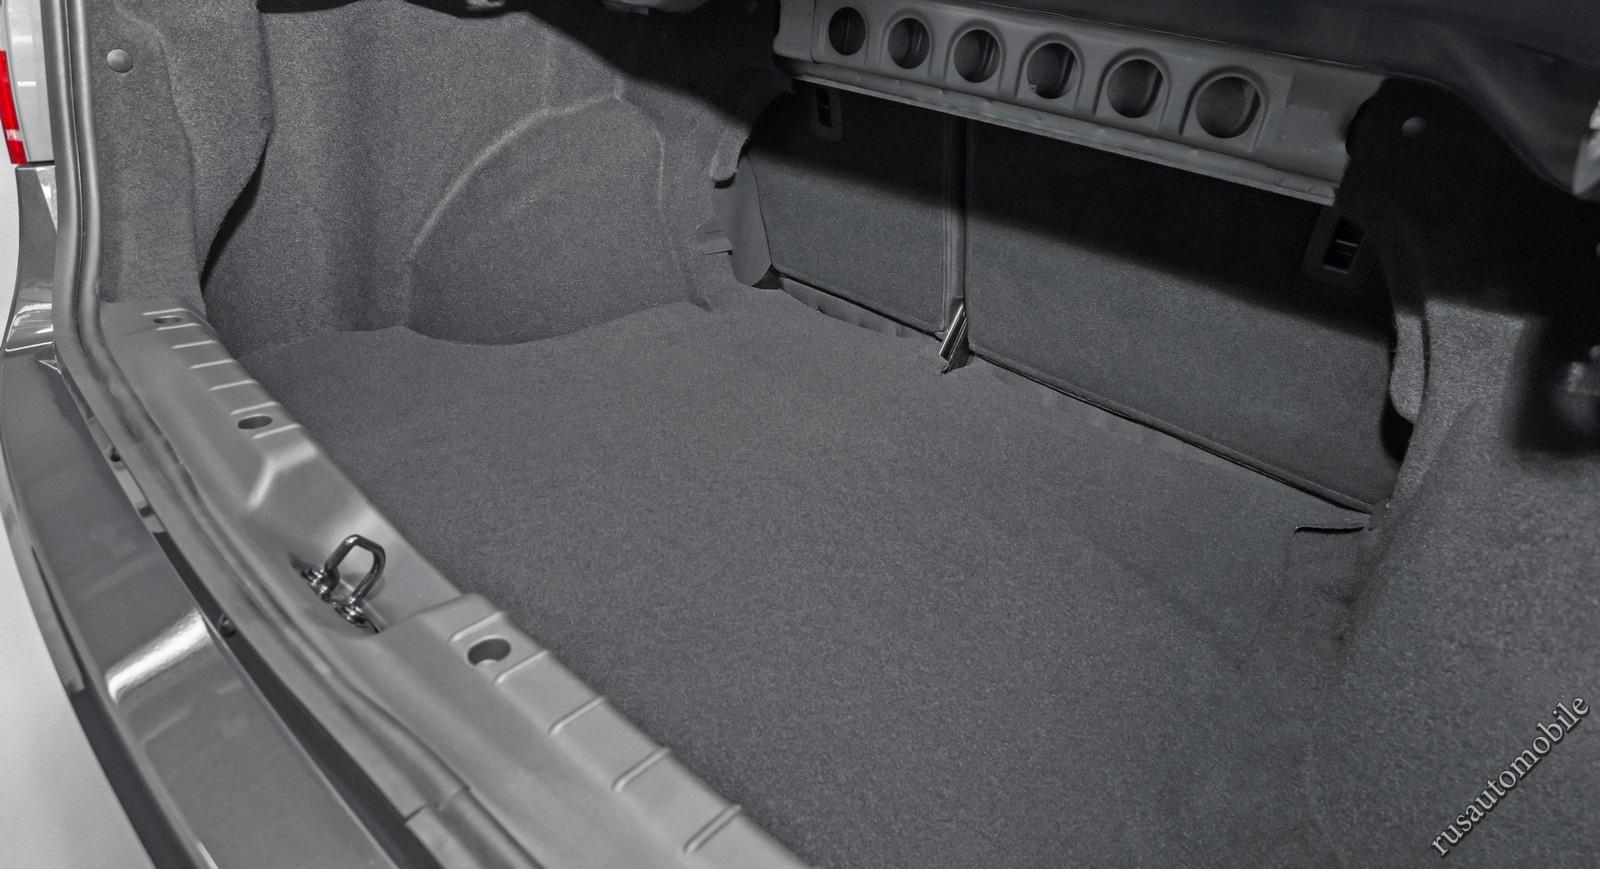 Багажник вместительный, но мешают петли крышки. Спинка заднего сиденья складывается частями, но не ровно